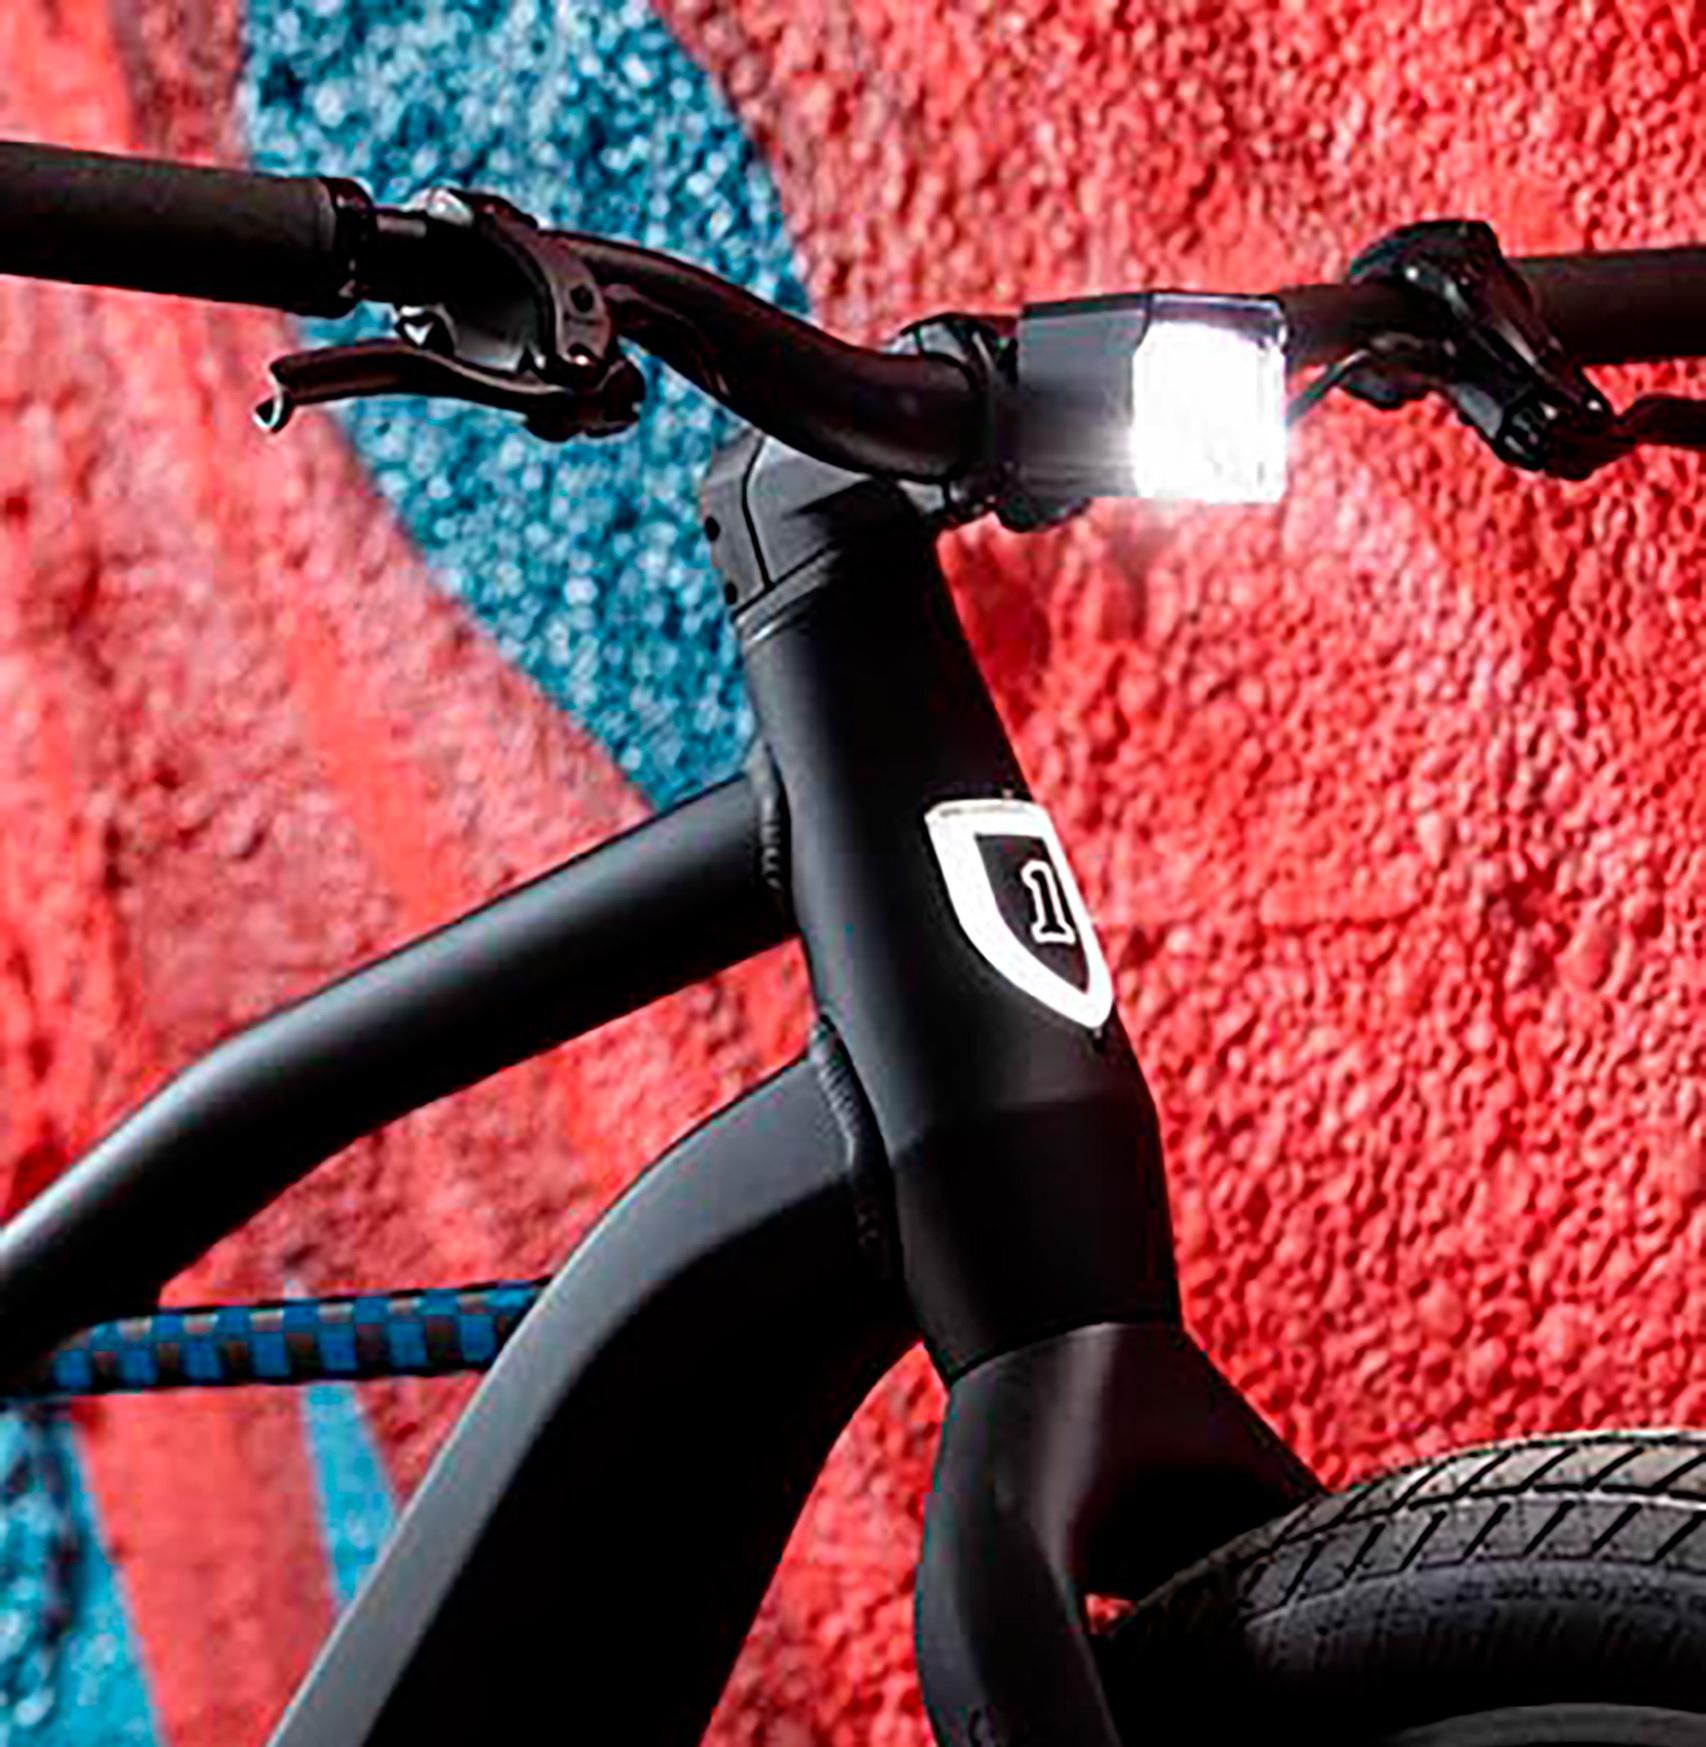 Una luz inteligente para las bicicletas - BBC News Mundo